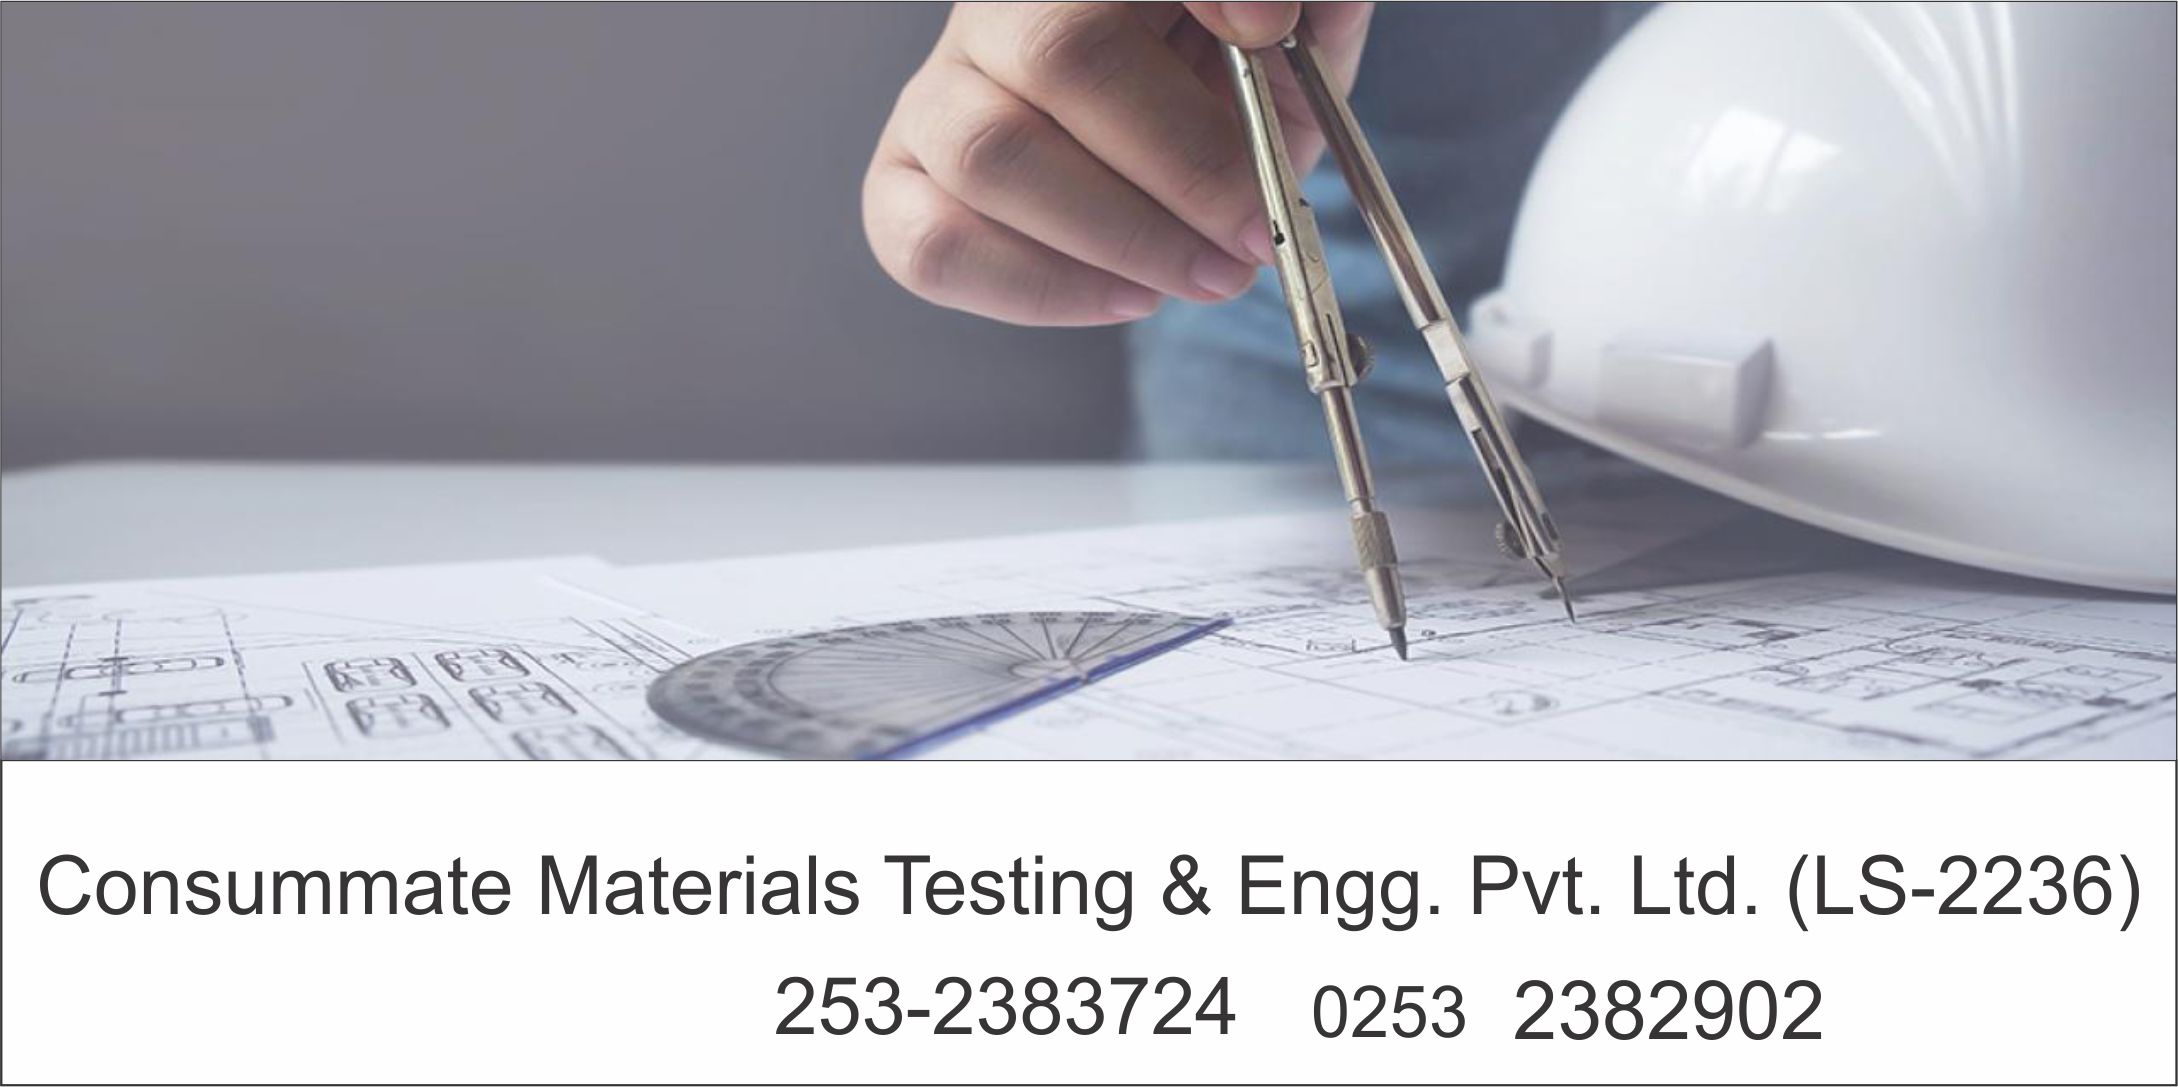 Consummate Materials Testing & Engg. Pvt. Ltd.